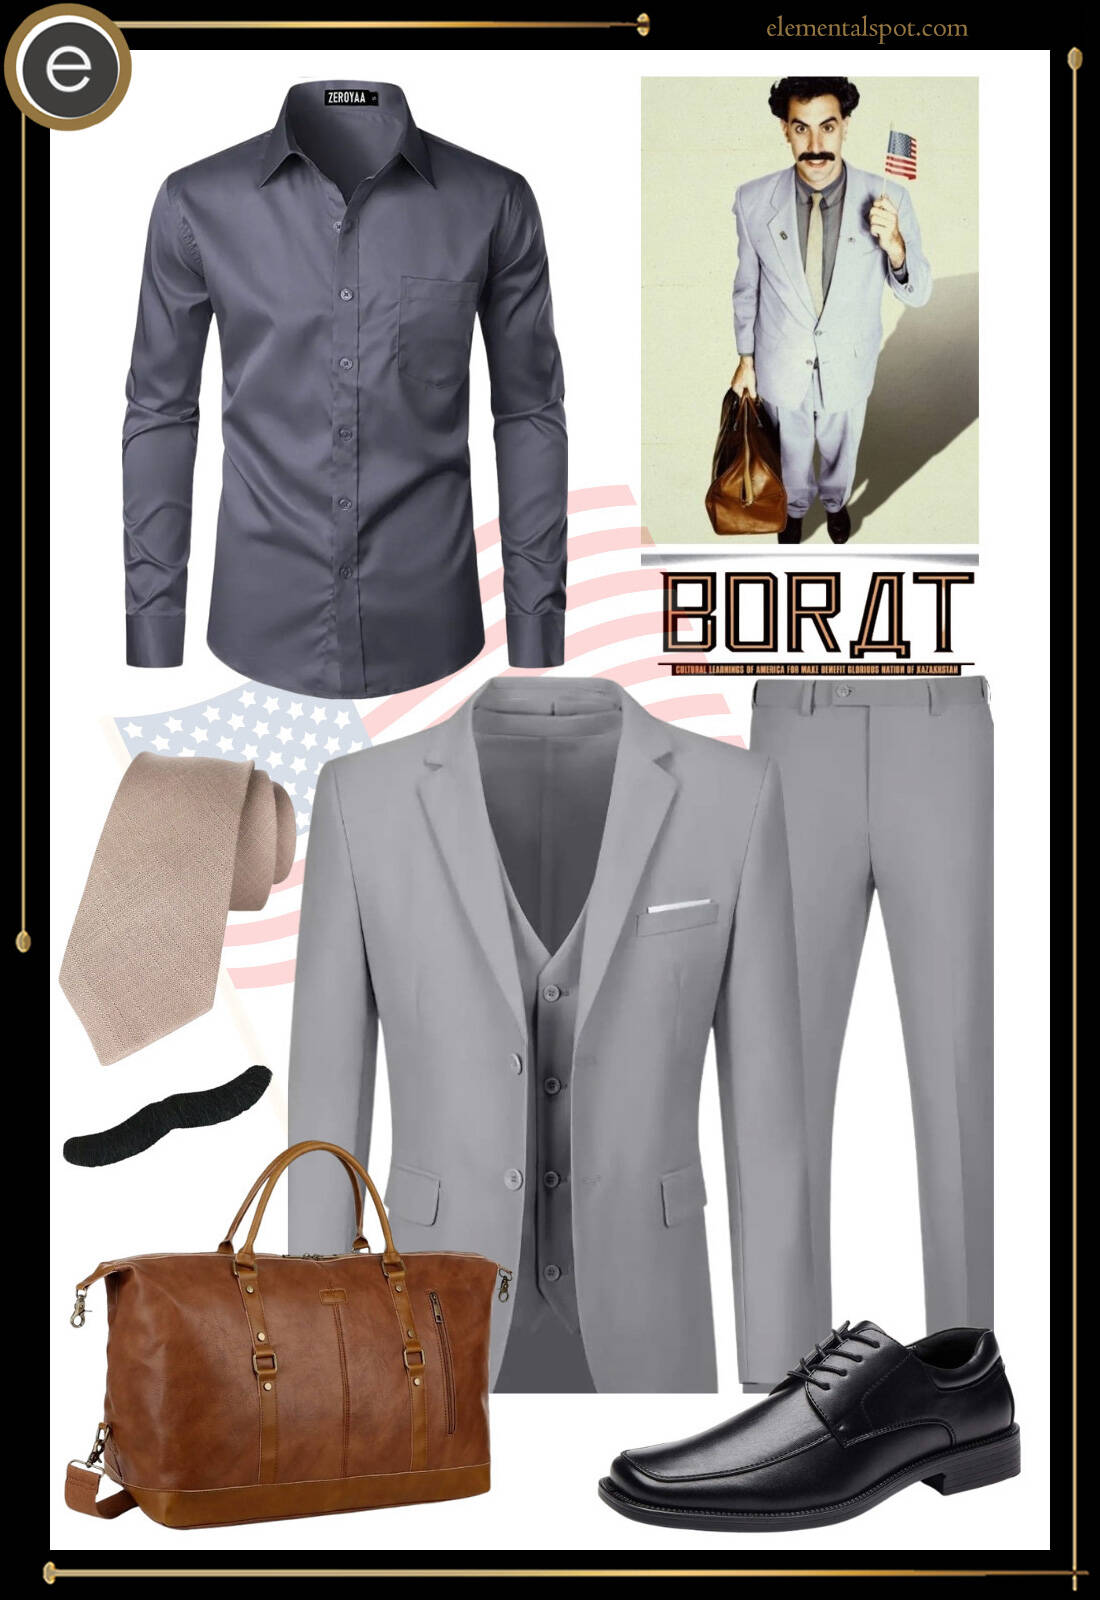 Costume or Outfit-Borat-Borat